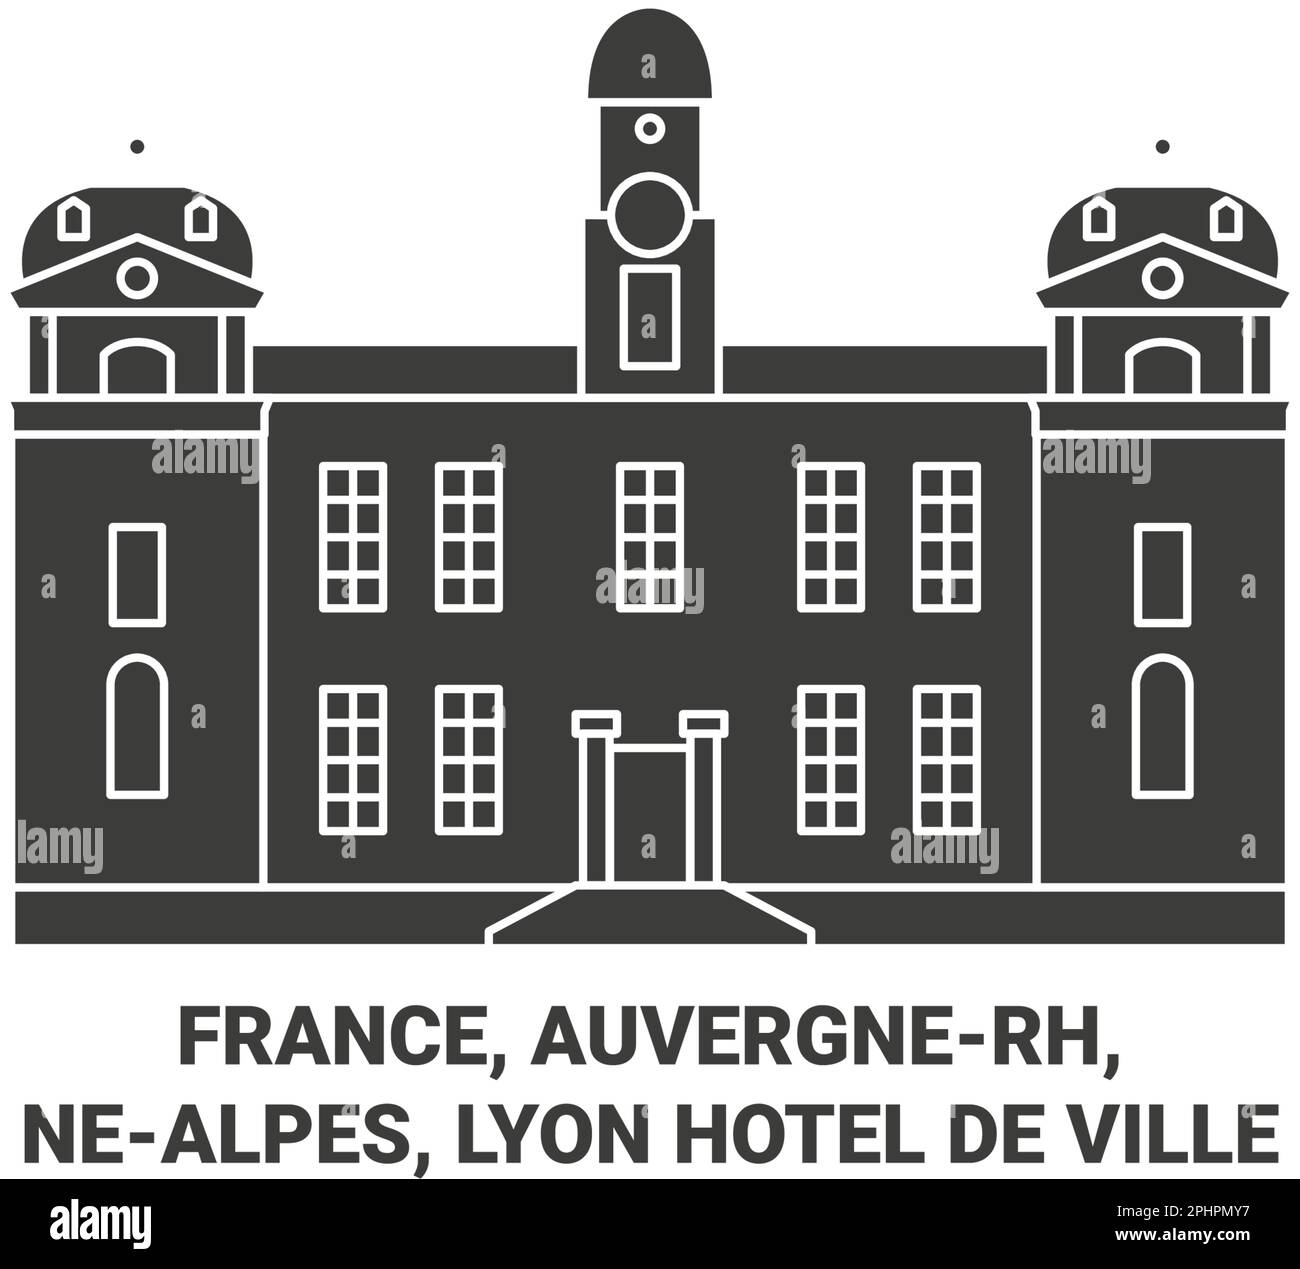 Frankreich, Auvergnerh, Nealpes, Lyonhtel De Ville Travel Landmark Vector Illustration Stock Vektor